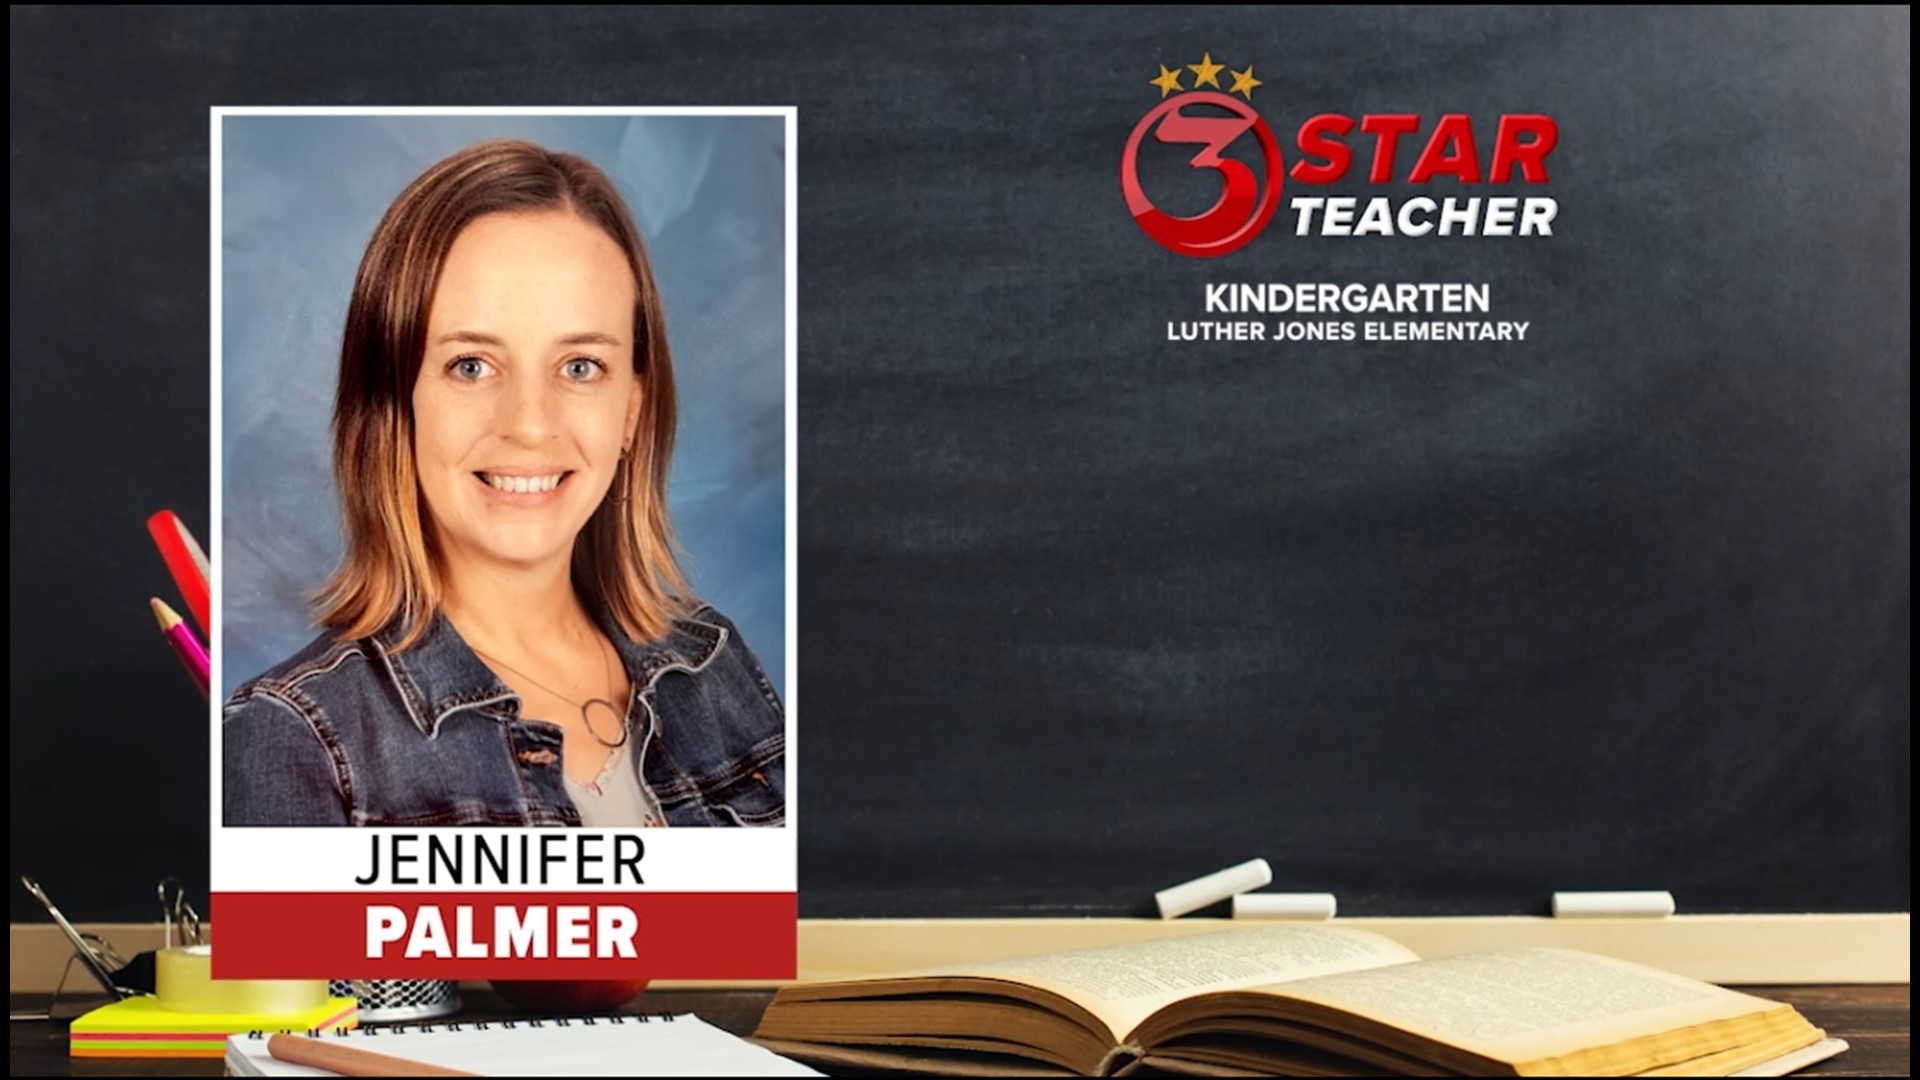 Jennifer is a Kindergarten teacher at Luther Jones Elementary.